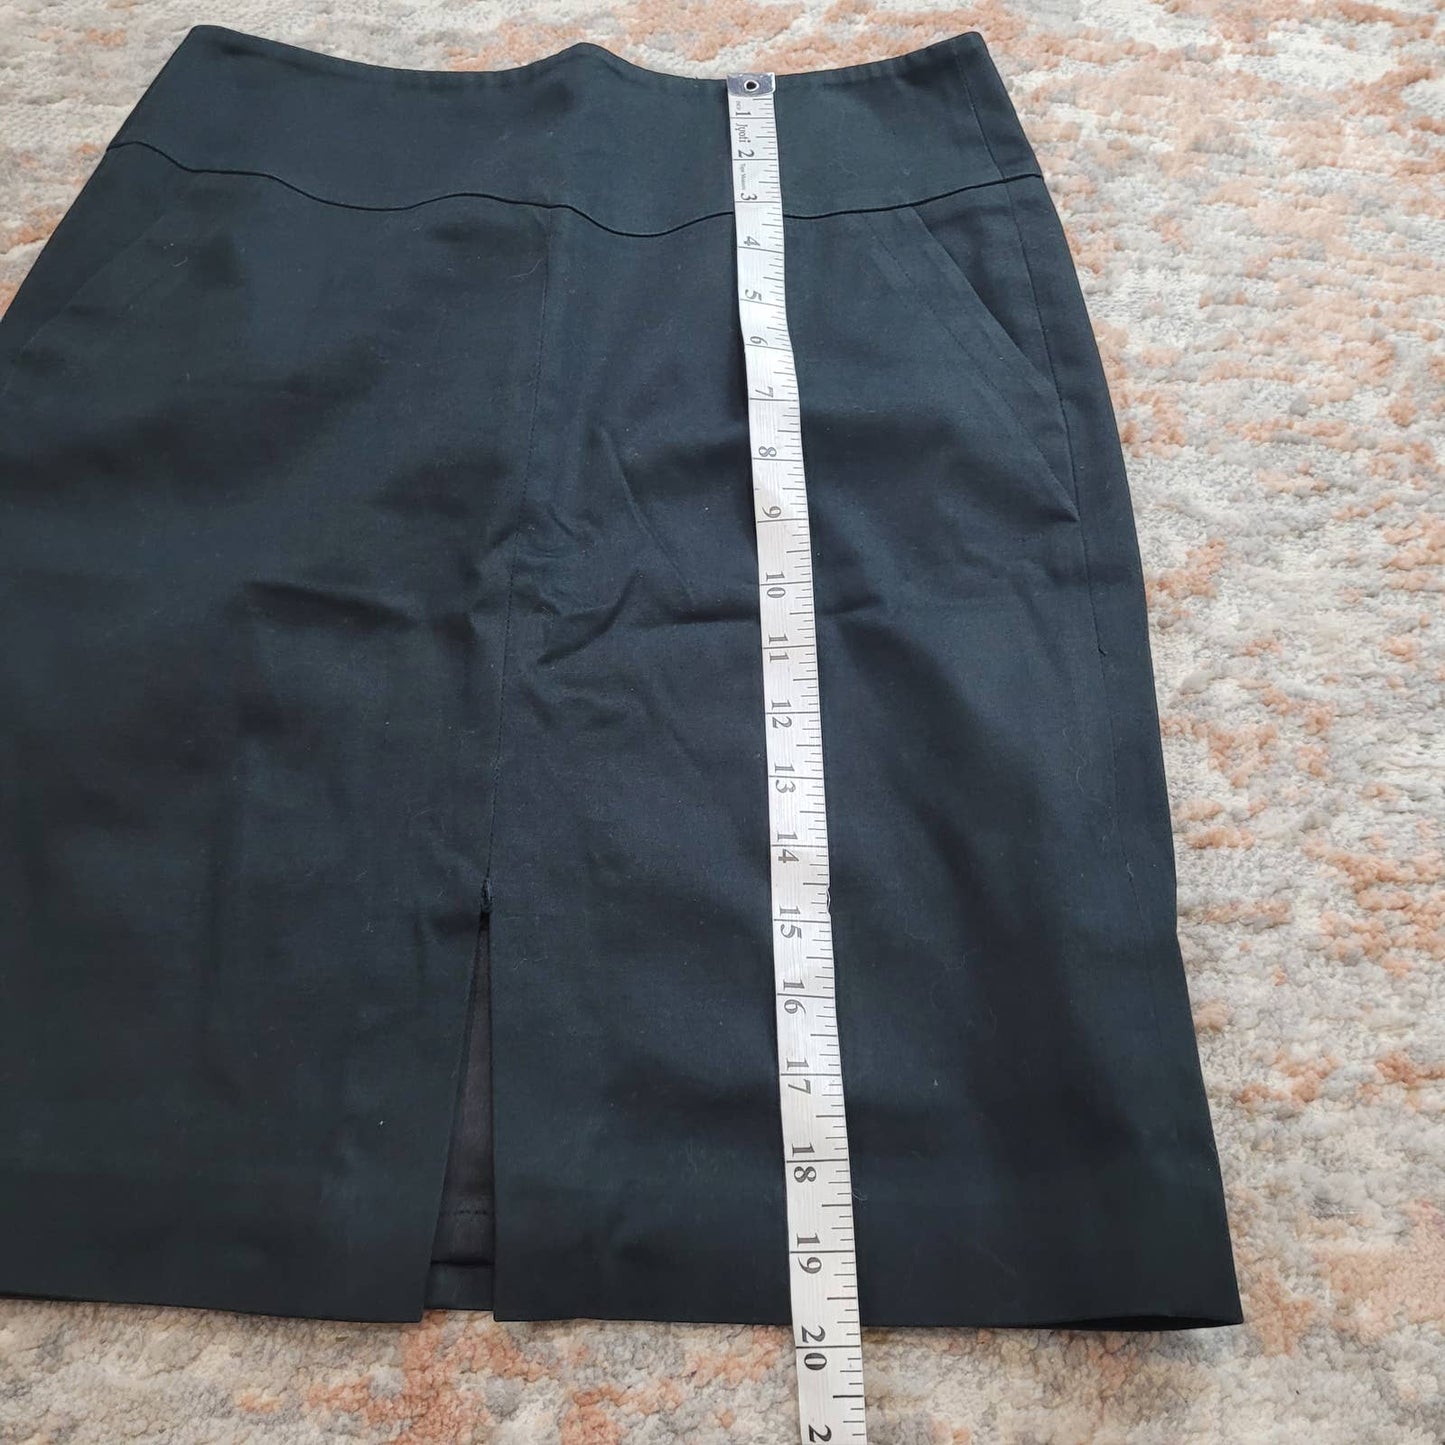 Club Monaco Black Front Slit Pencil Skirt - Size 2